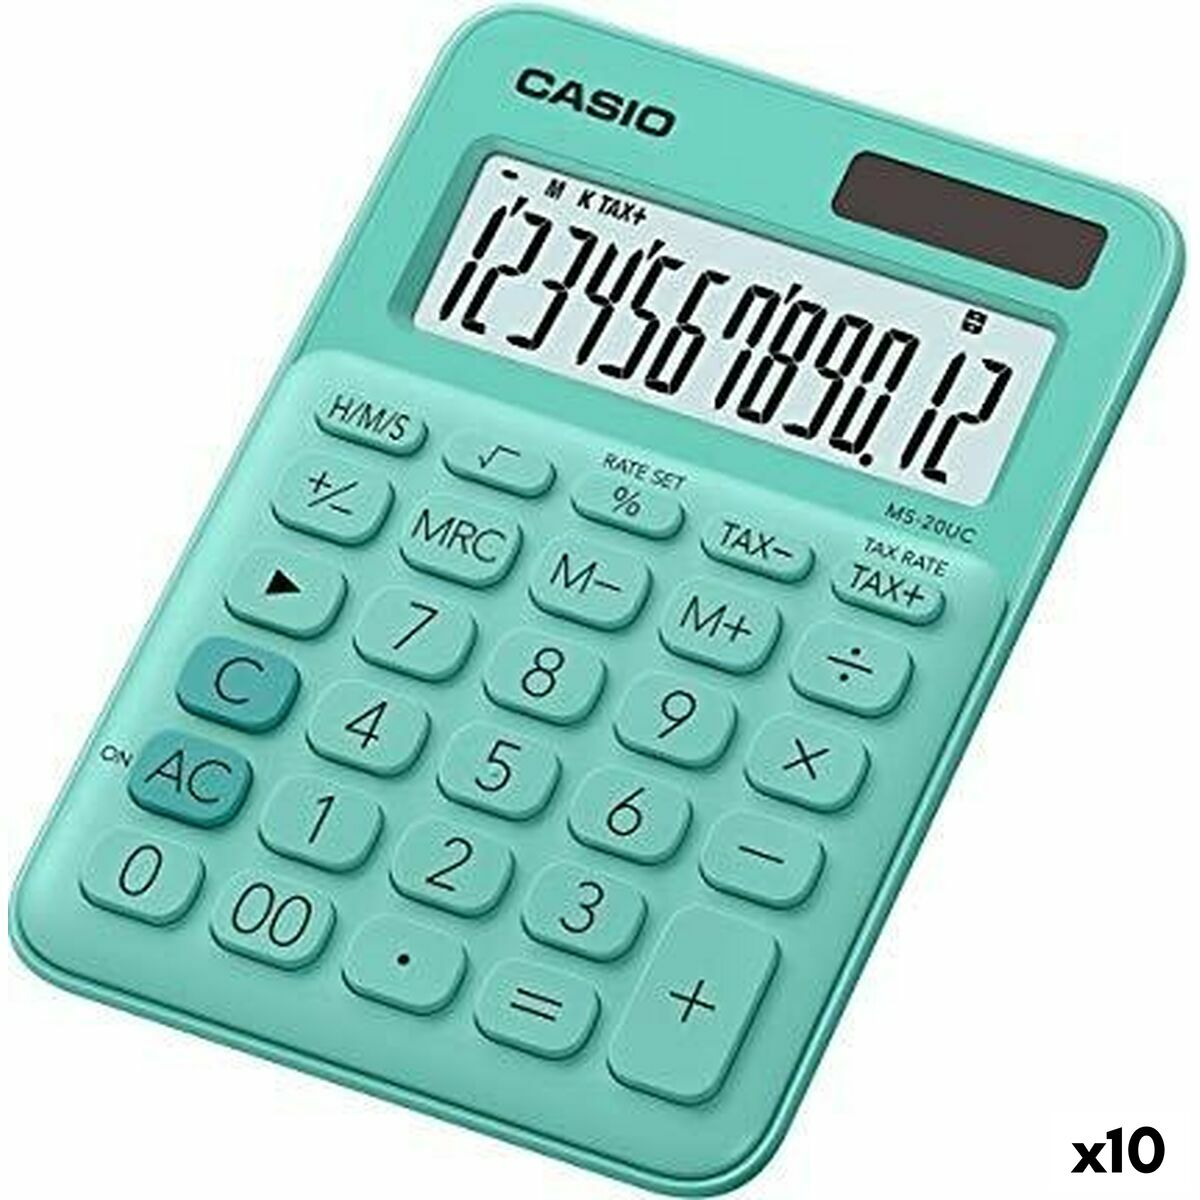 Calculator Casio MS-20UC Green 2,3 x 10,5 x 14,95 cm (10 Units)